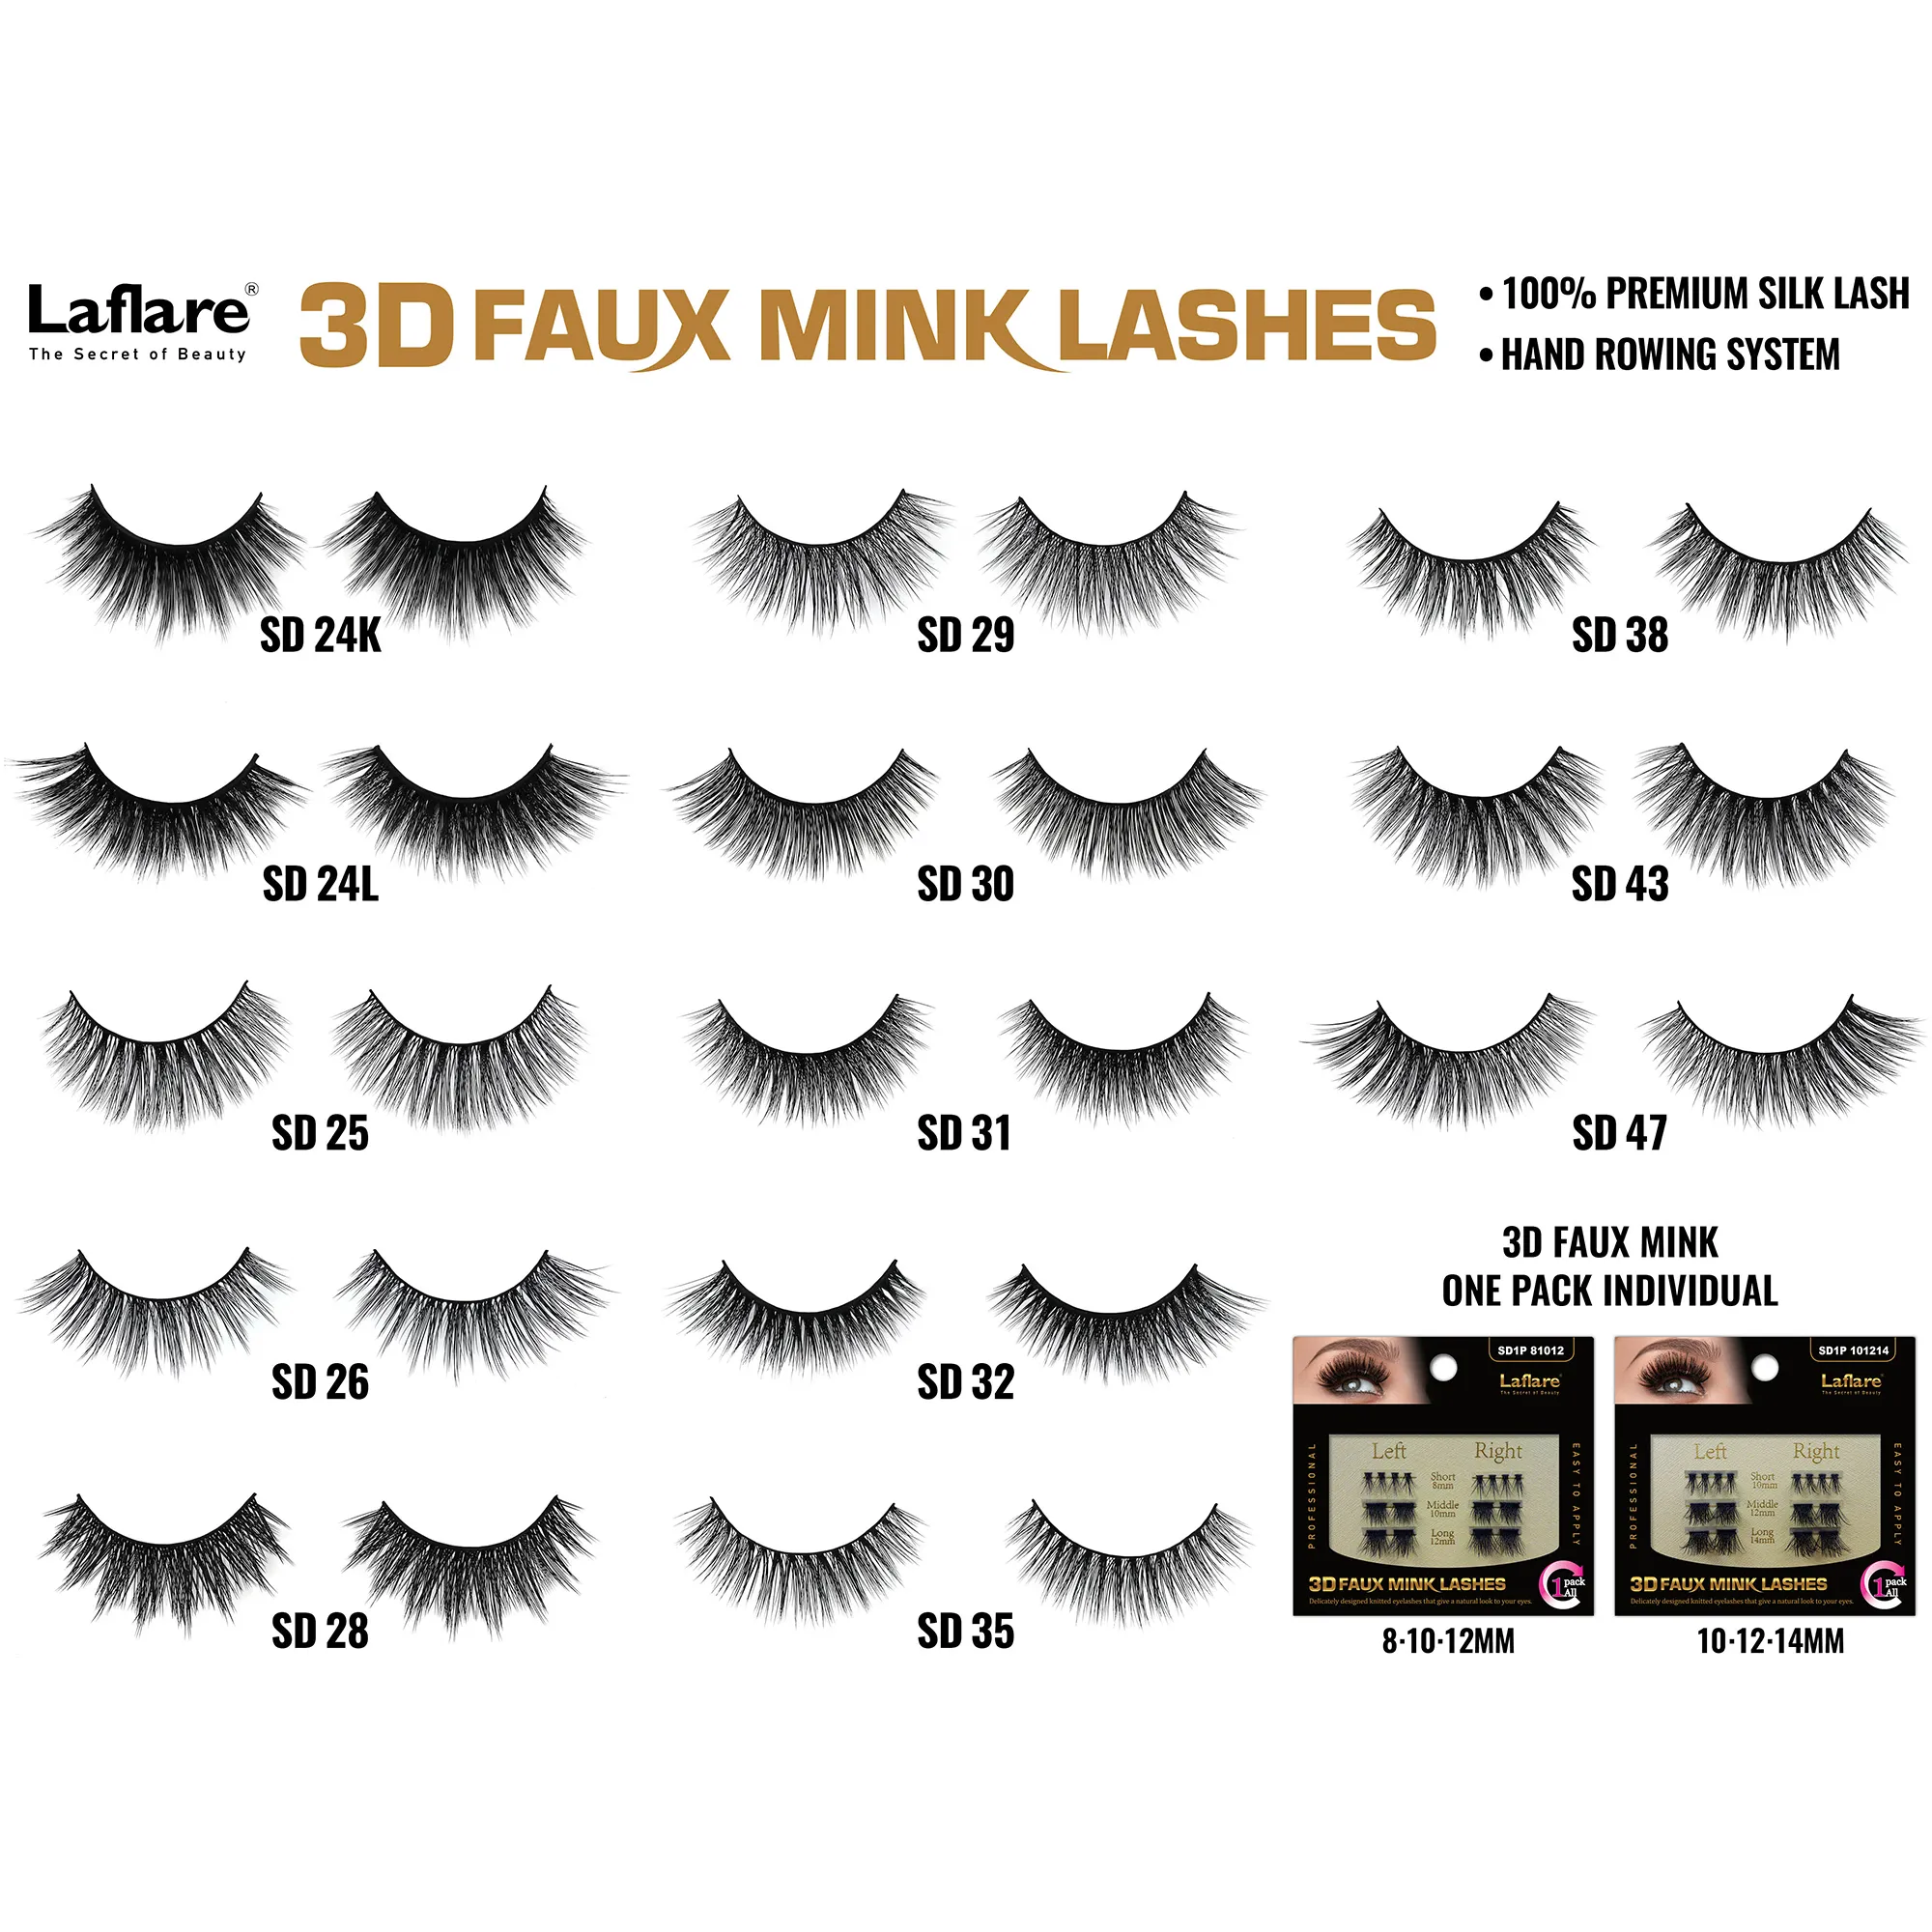 3D FAUX MINK LASH – Laflare